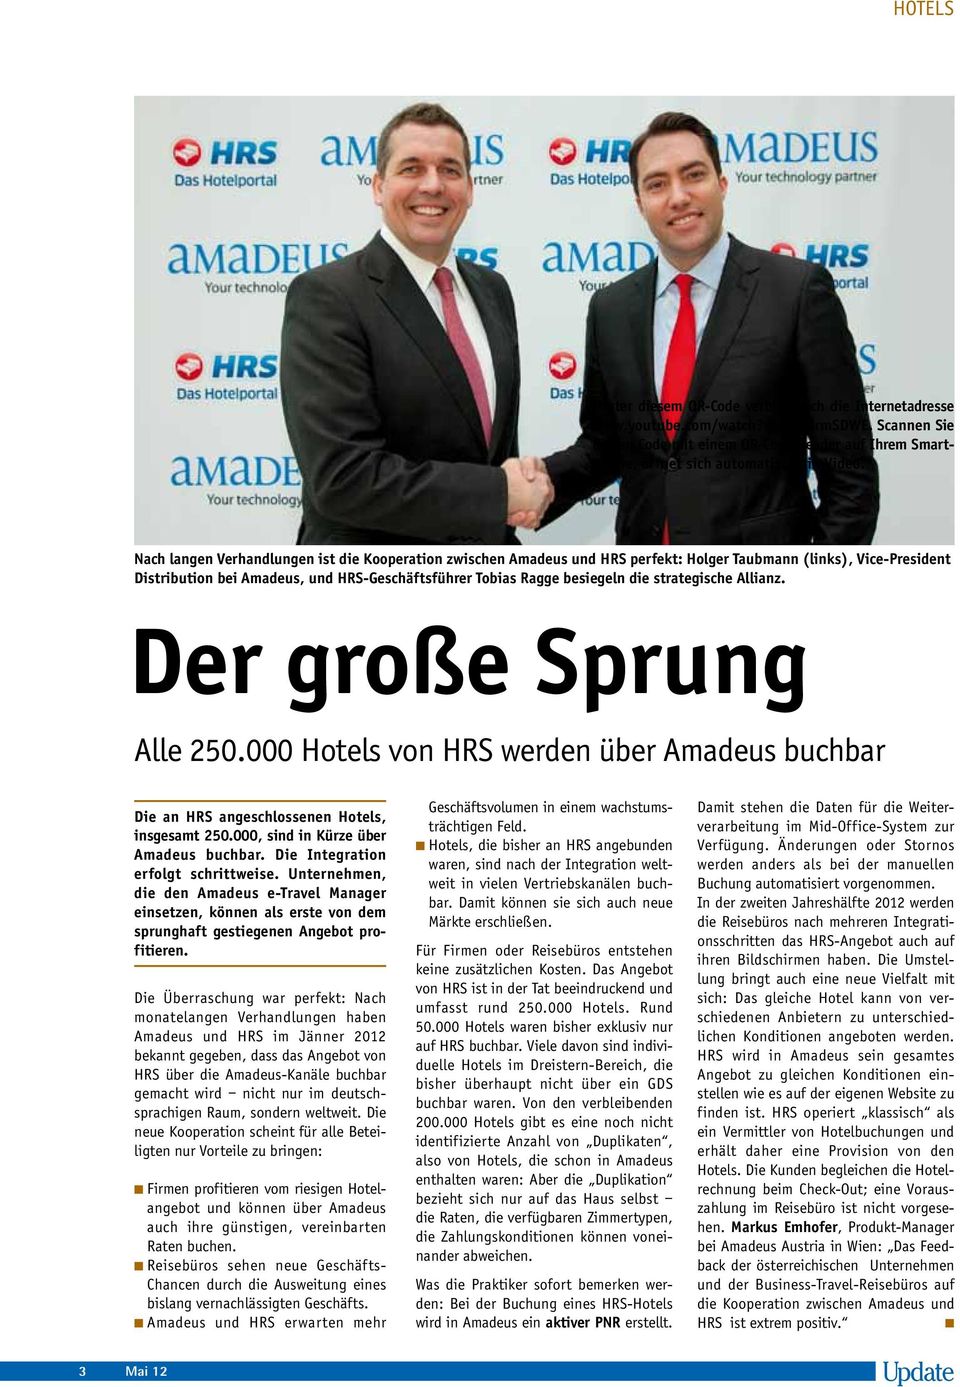 Nach langen Verhandlungen ist die Kooperation zwischen Amadeus und HRS perfekt: Holger Taubmann (links), Vice-President Distribution bei Amadeus, und HRS-Geschäftsführer Tobias Ragge besiegeln die